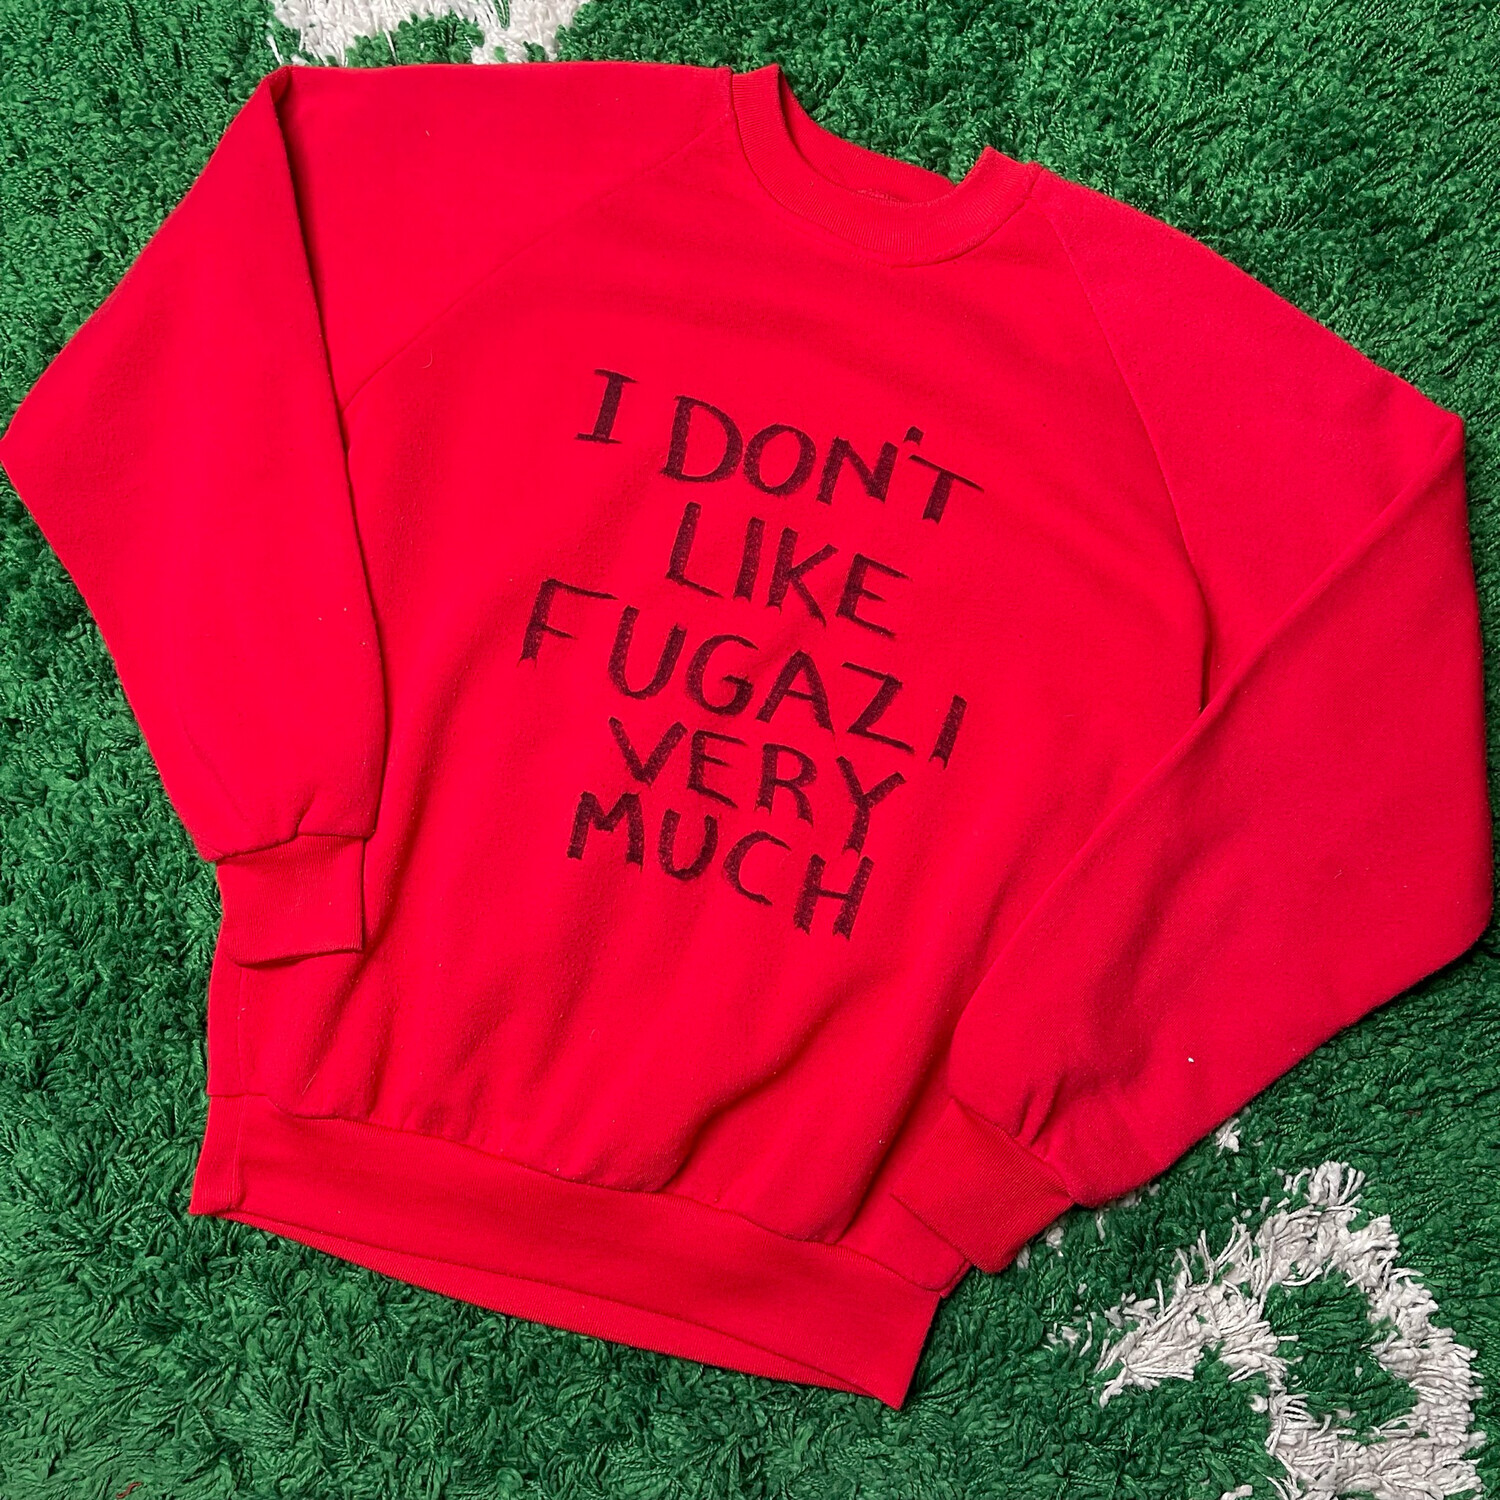 I Don't Like Fugazi Crewneck Sweatshirt Size Medium